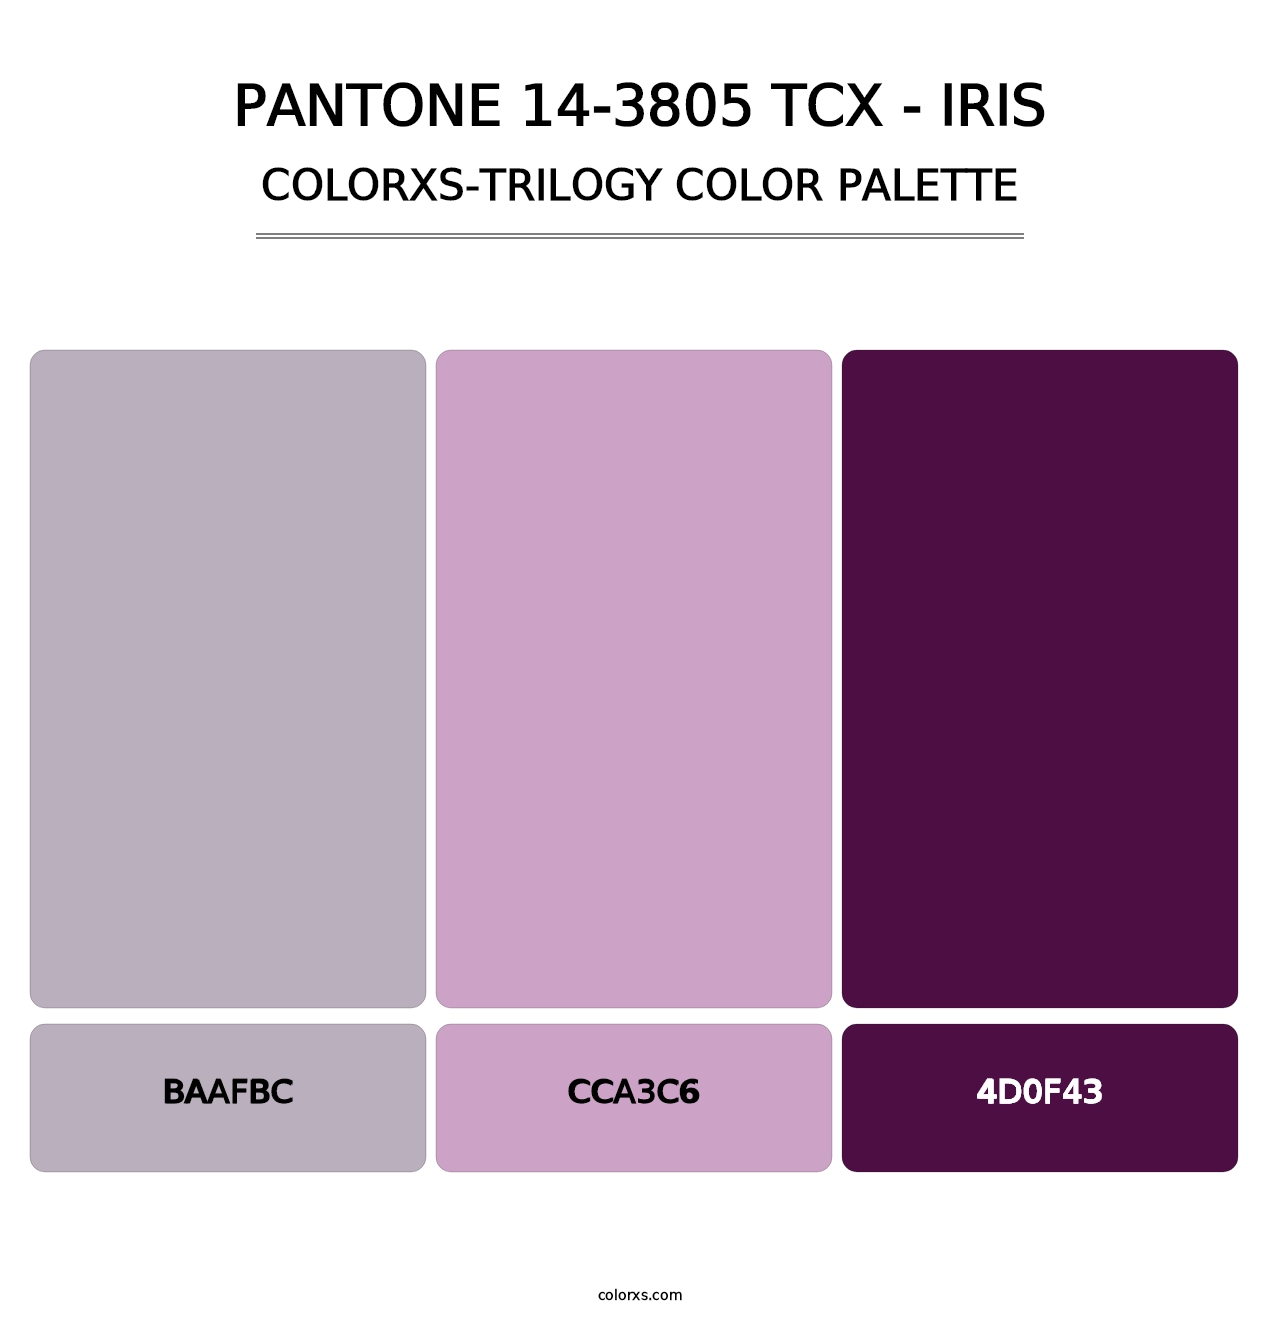 PANTONE 14-3805 TCX - Iris - Colorxs Trilogy Palette